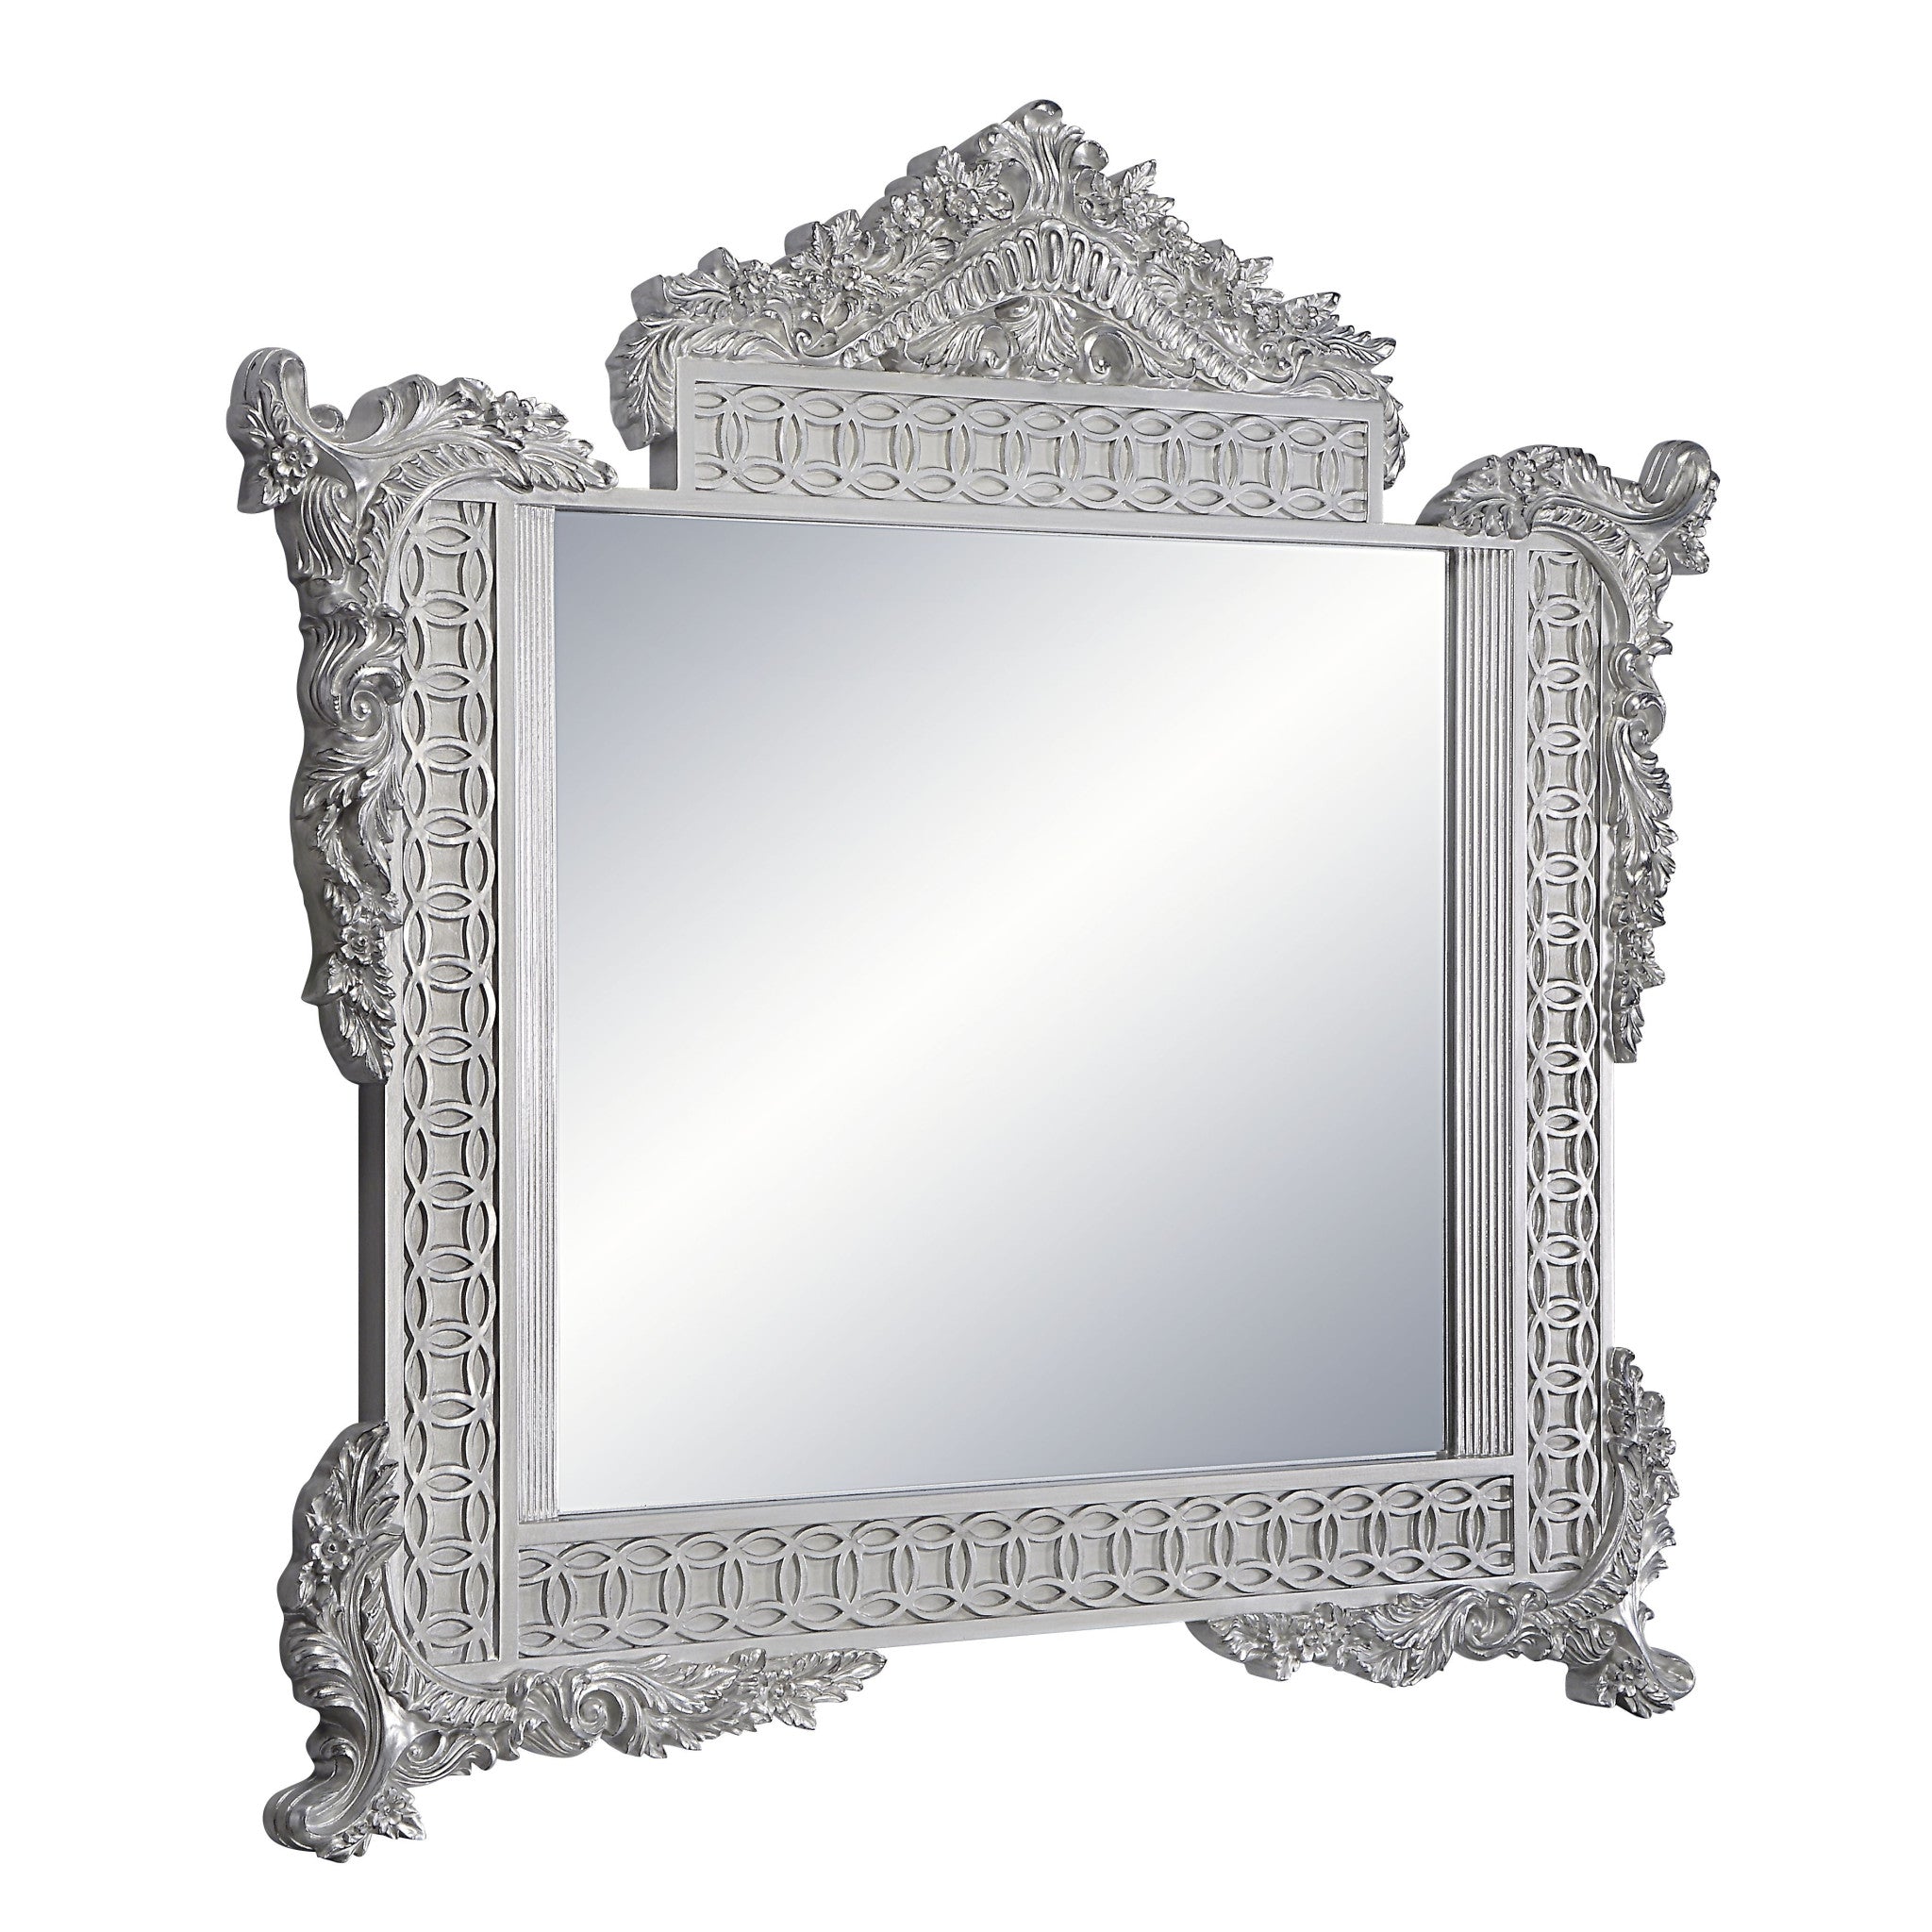 54" Light Gold & Gray Finish Irregular Dresser Mirror